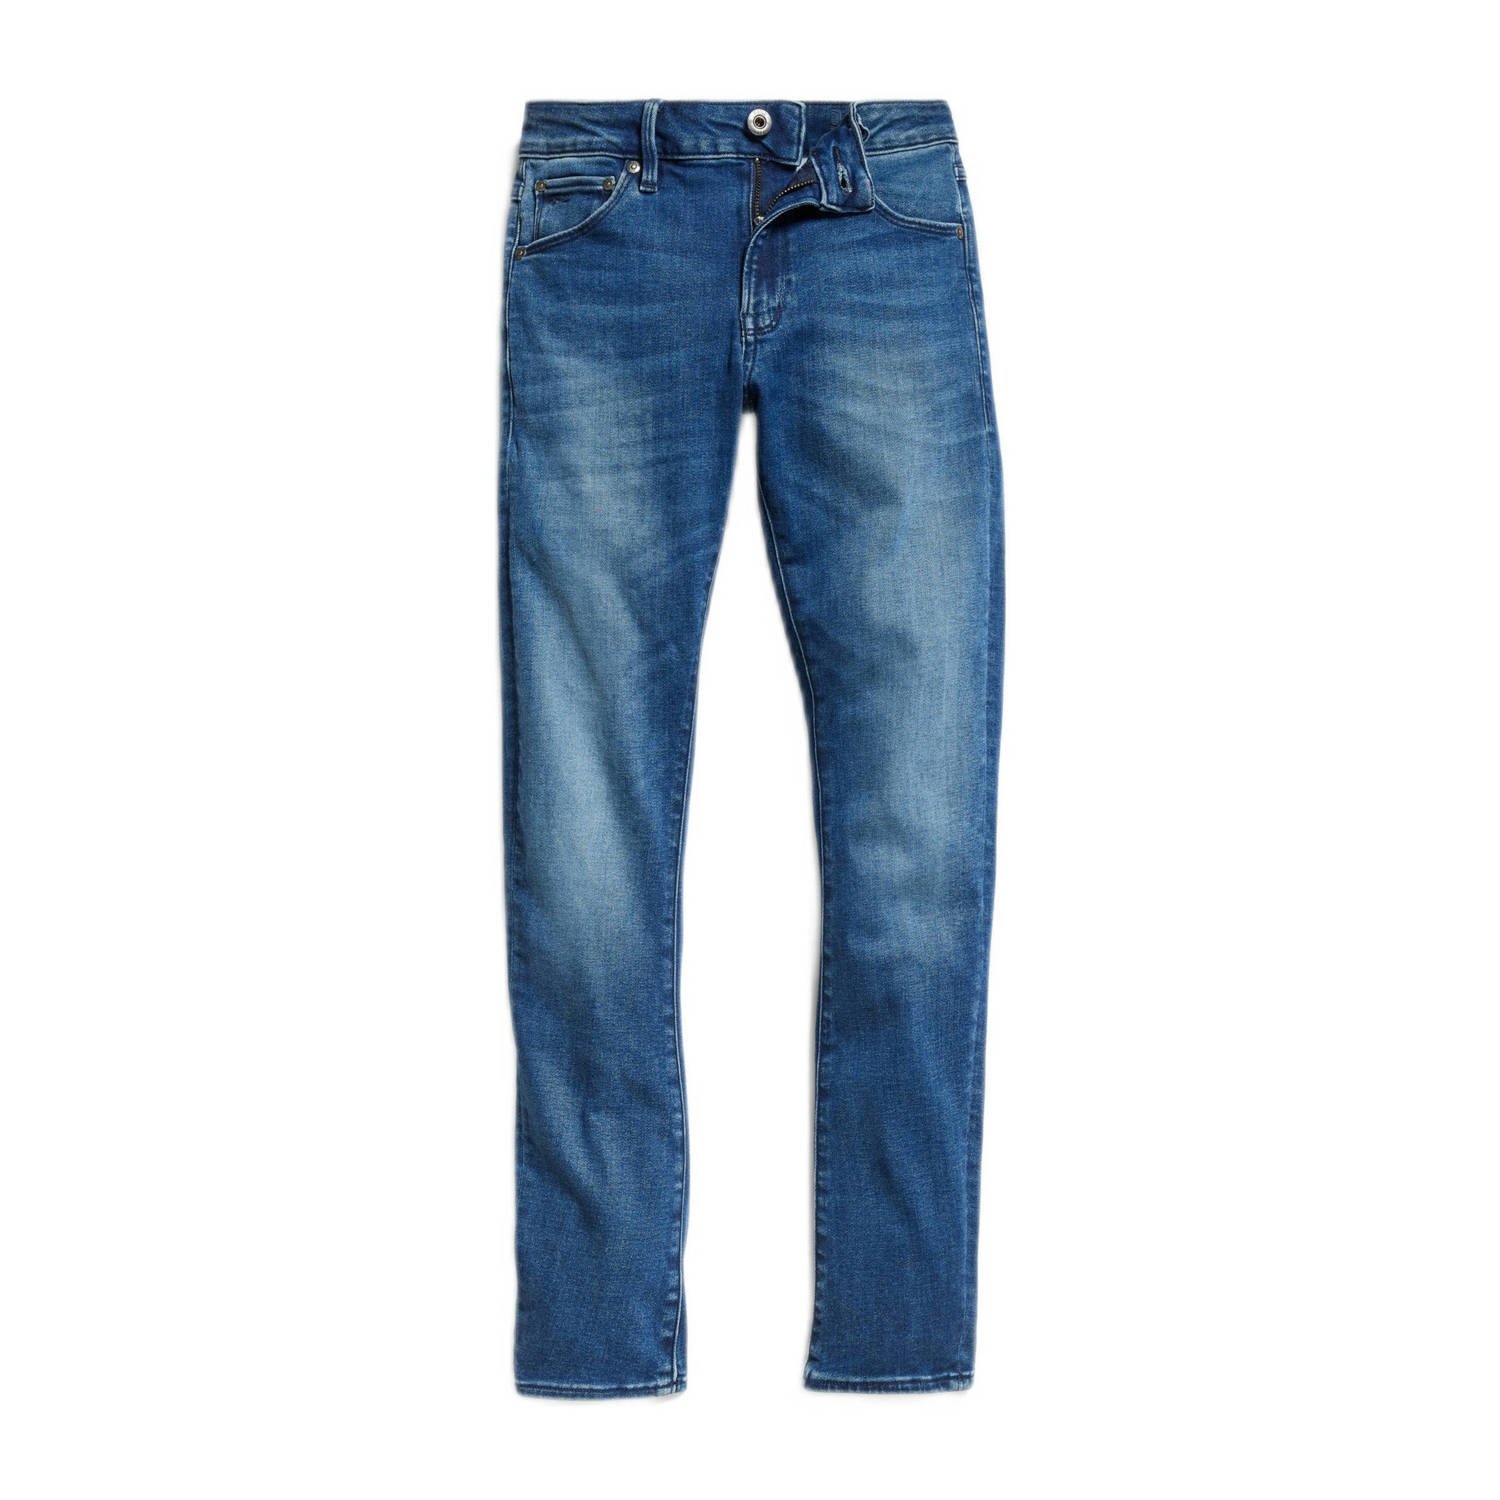 G-Star Raw Skinny jeans skinny jeans faded indigo Blauw Meisjes Stretchdenim 116